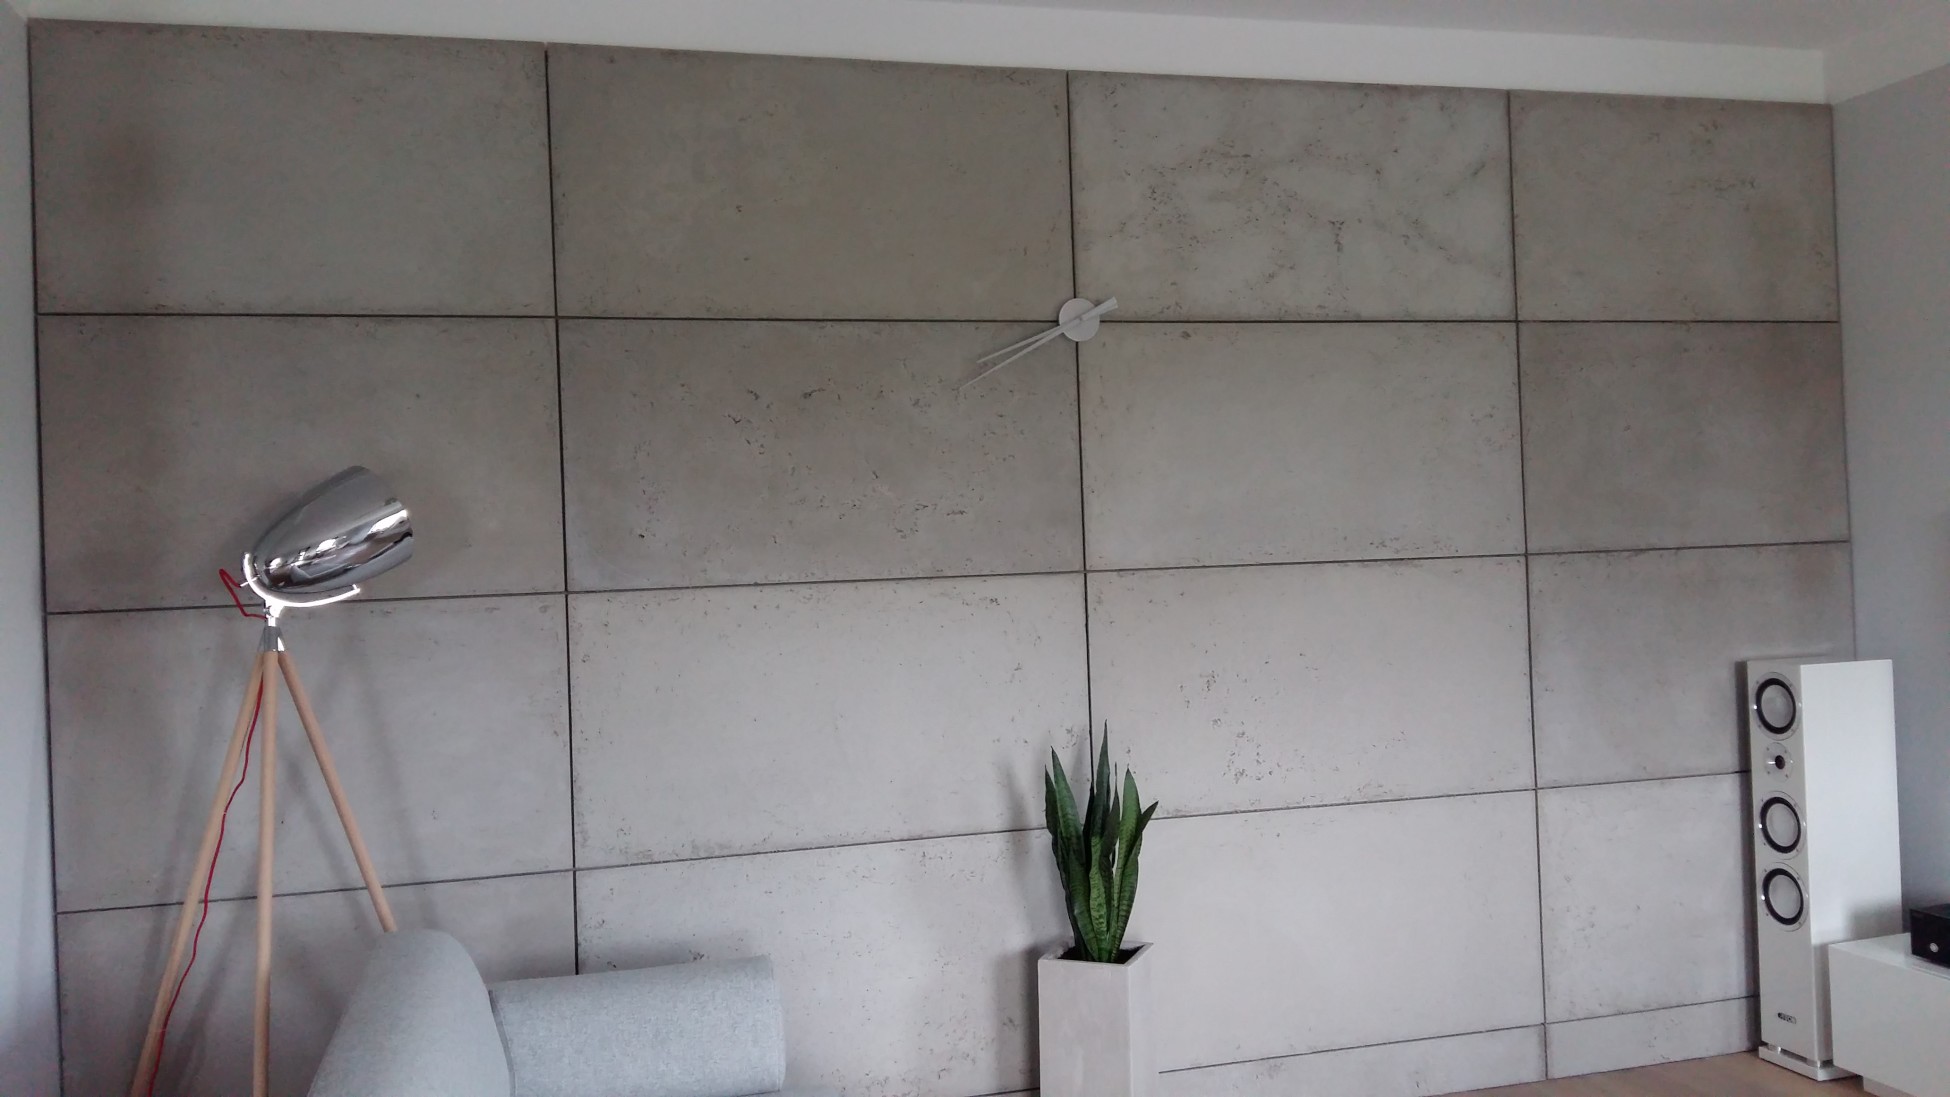 清水混凝土幕墙挂板在装饰中的应用效果